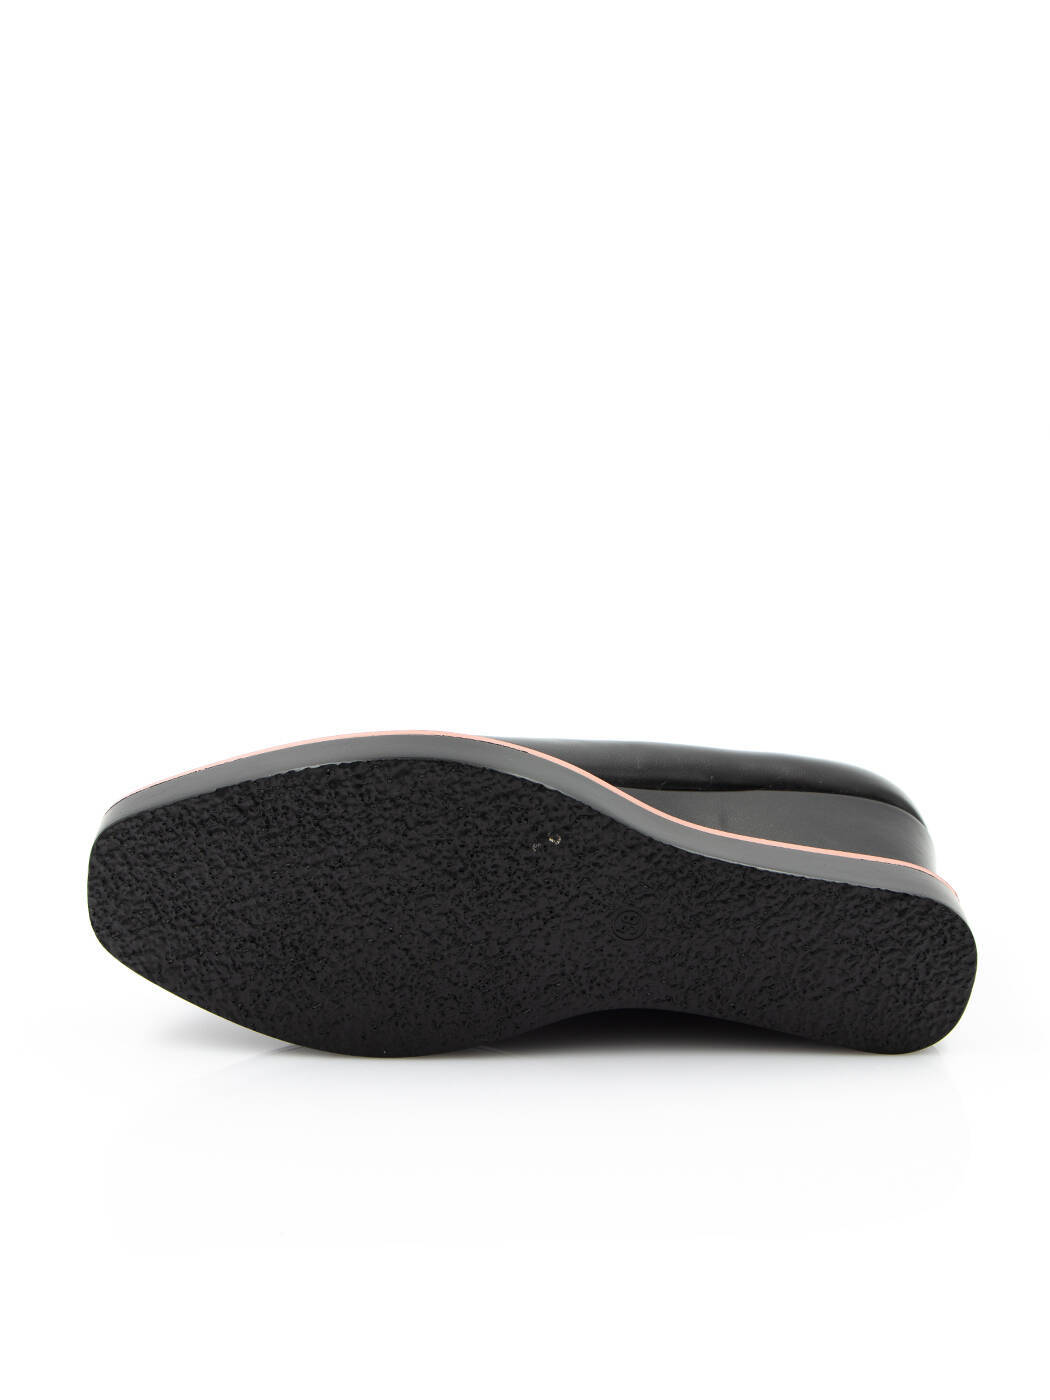 Туфли женские черные экокожа каблук устойчивый демисезон от производителя 3M вид 2